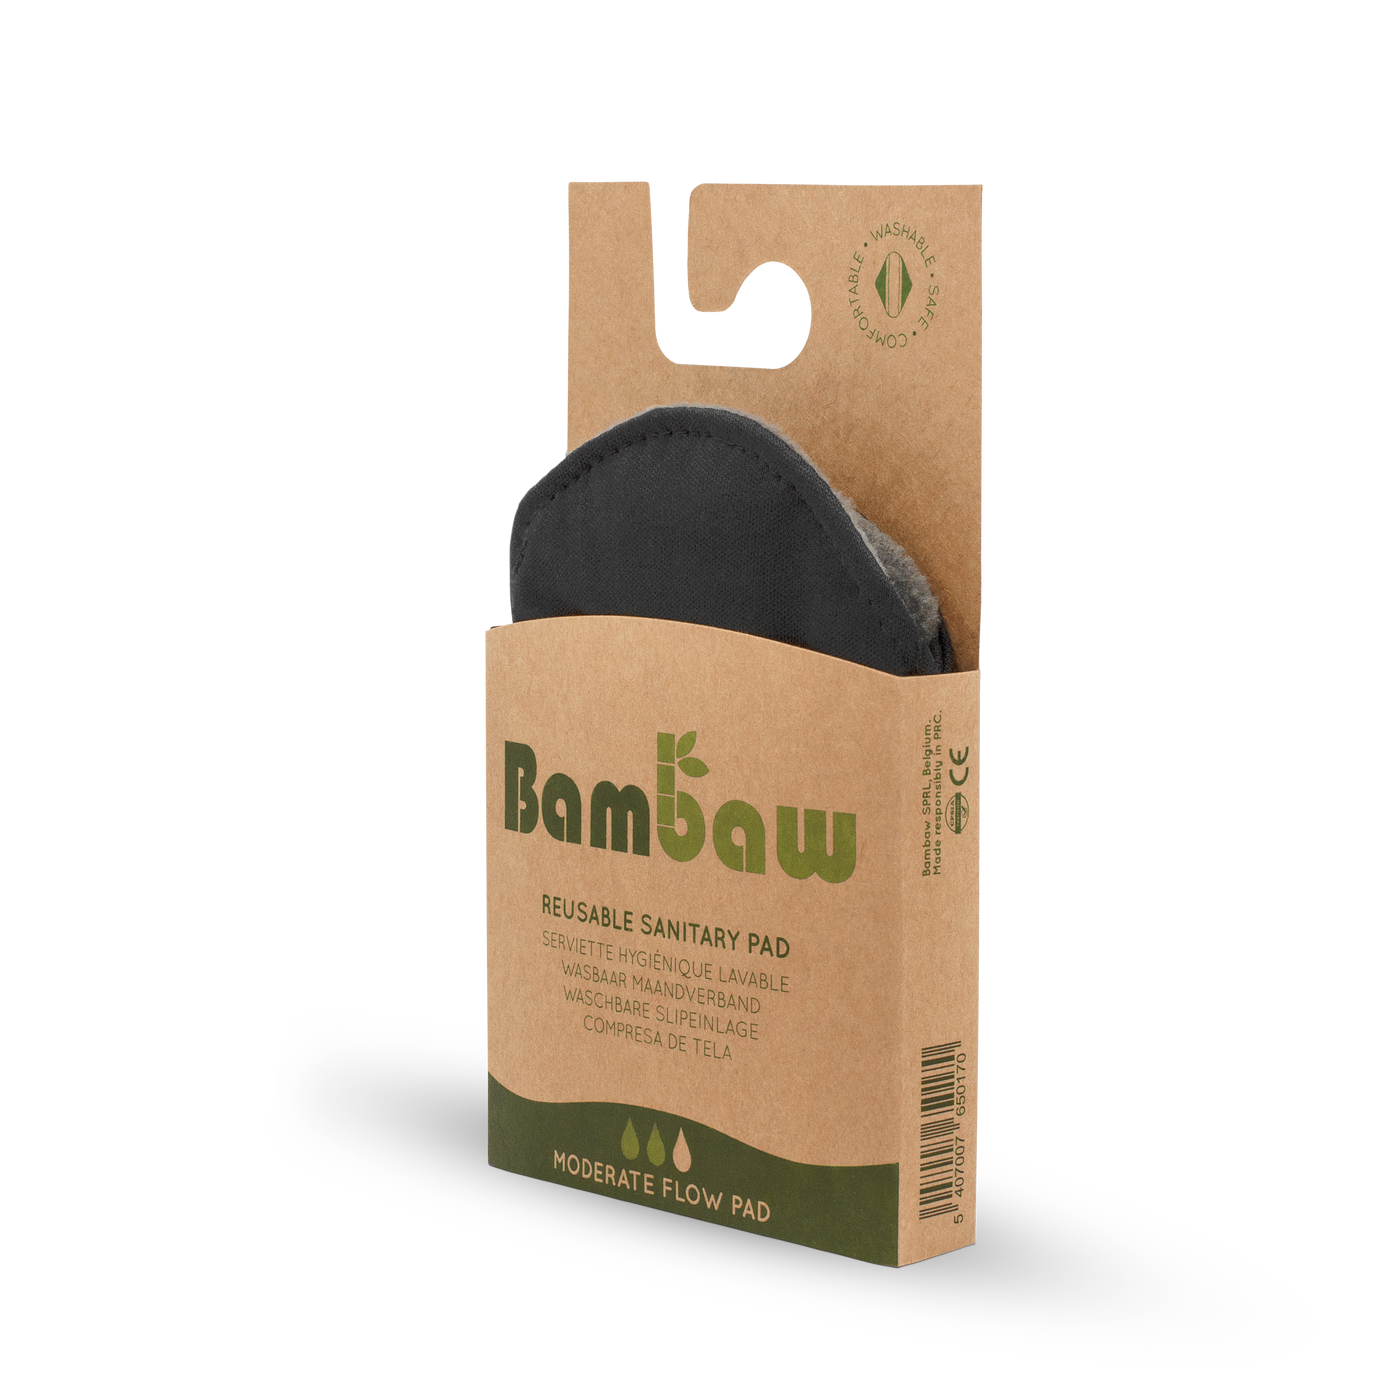 Bambaw Reusable Sanitary Pads - Moderate Flow